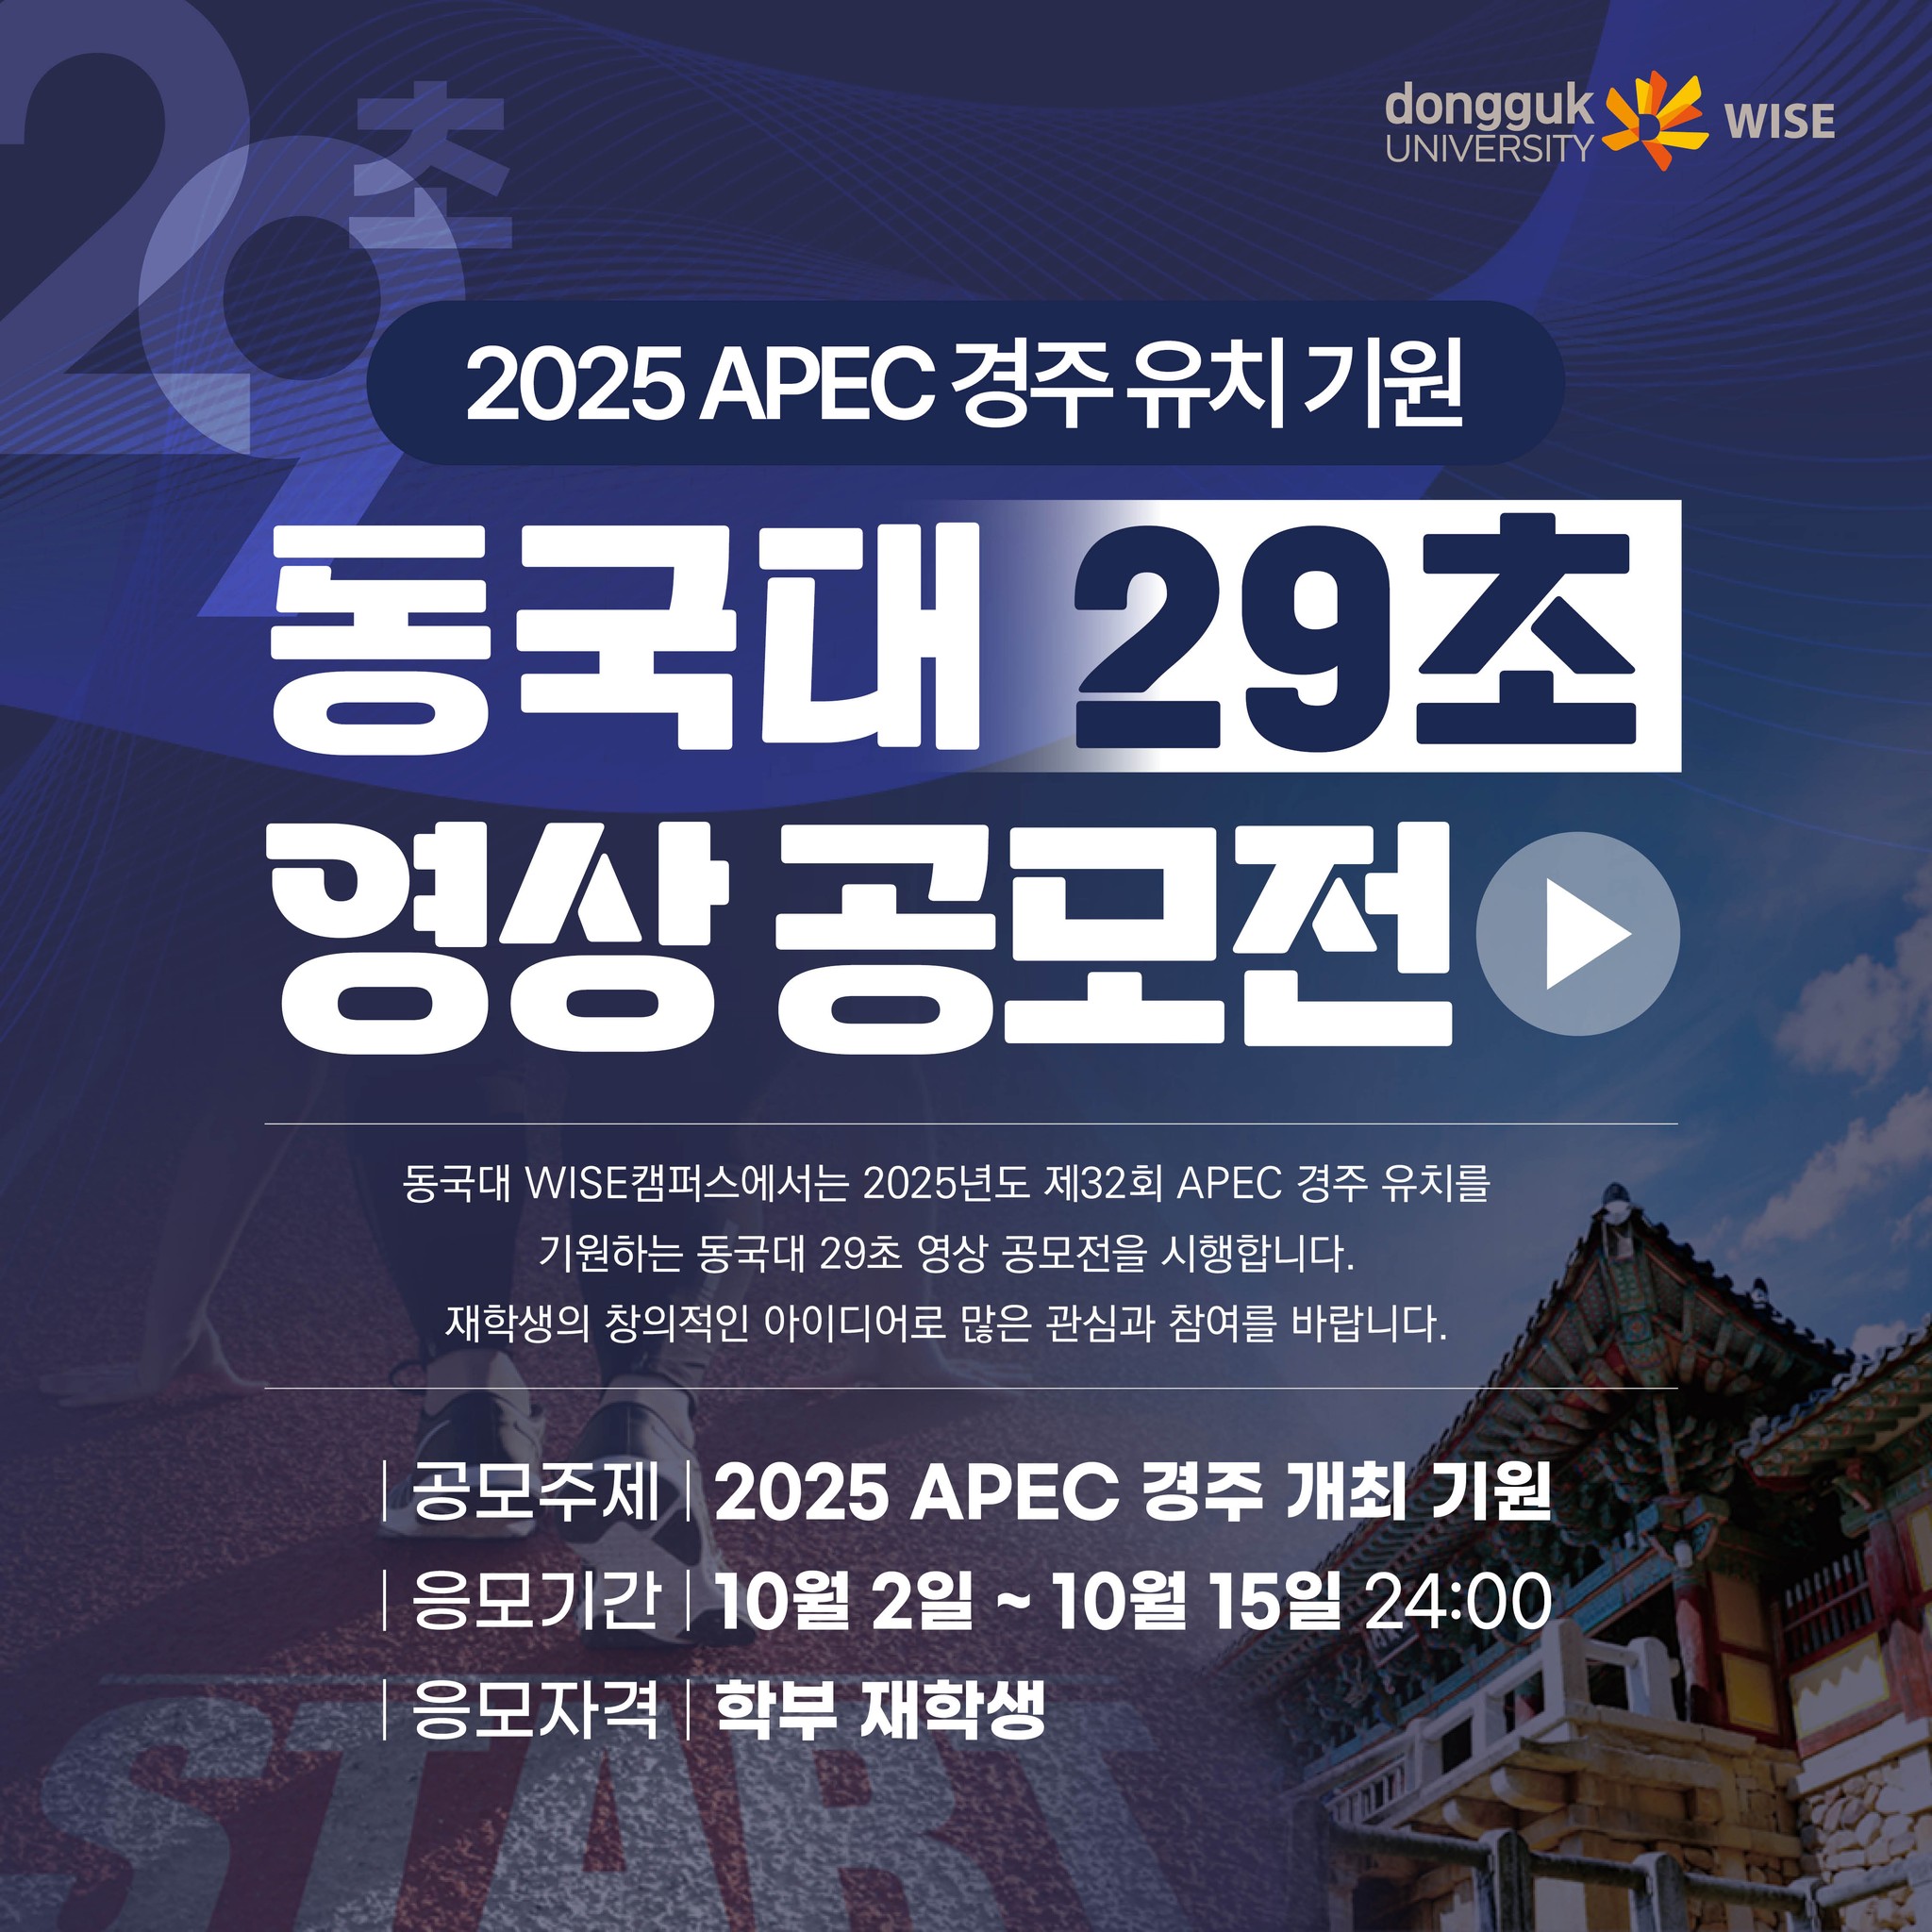 2025년도 제 32회 APEC 경주 유치를 기원하는 동국대 29초 영상 공모전